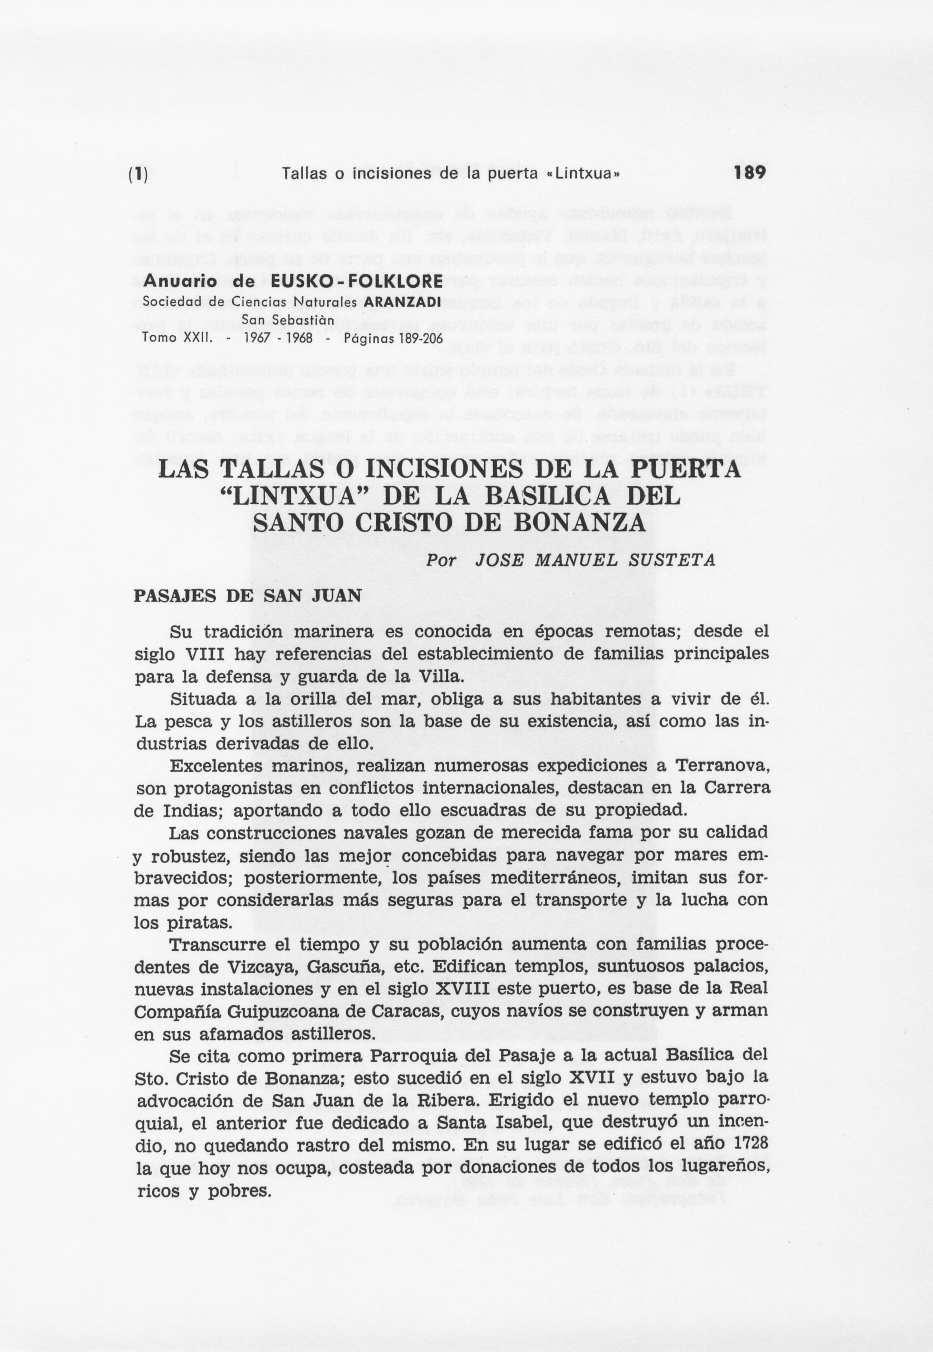 (1) Tallas o incisiones de la puerta «Lintxuan 189 Anuario de EUSK-FLKLRE Sociedad de Ciencias Naturales ARANZADI San Sebastián Tomo XXII.